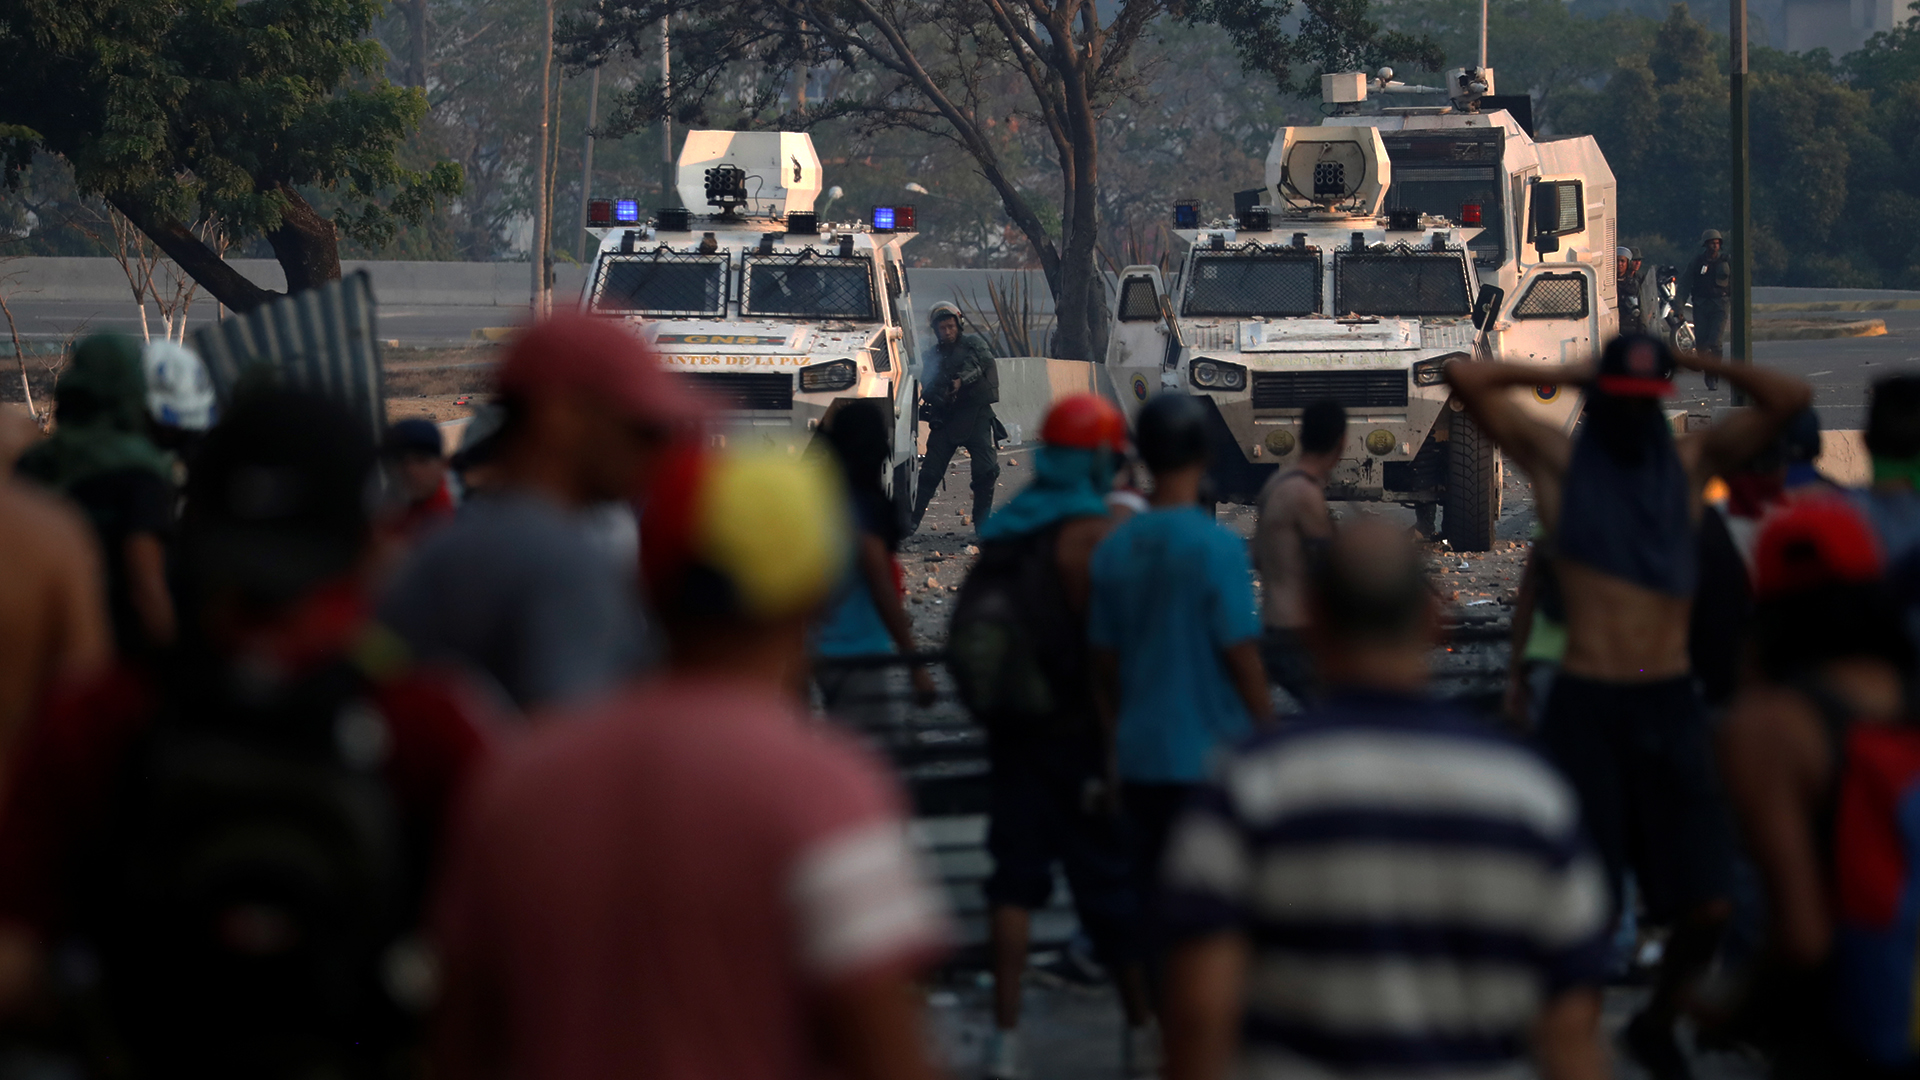 Miembros de la Guardia Nacional de Venezuela enfrentan a manifestantes a favor del presidente interino Juan Guaidó en la noche del martes en Caracas, Venezuela (Foto: REUTERS/Carlos Garcia Rawlins)